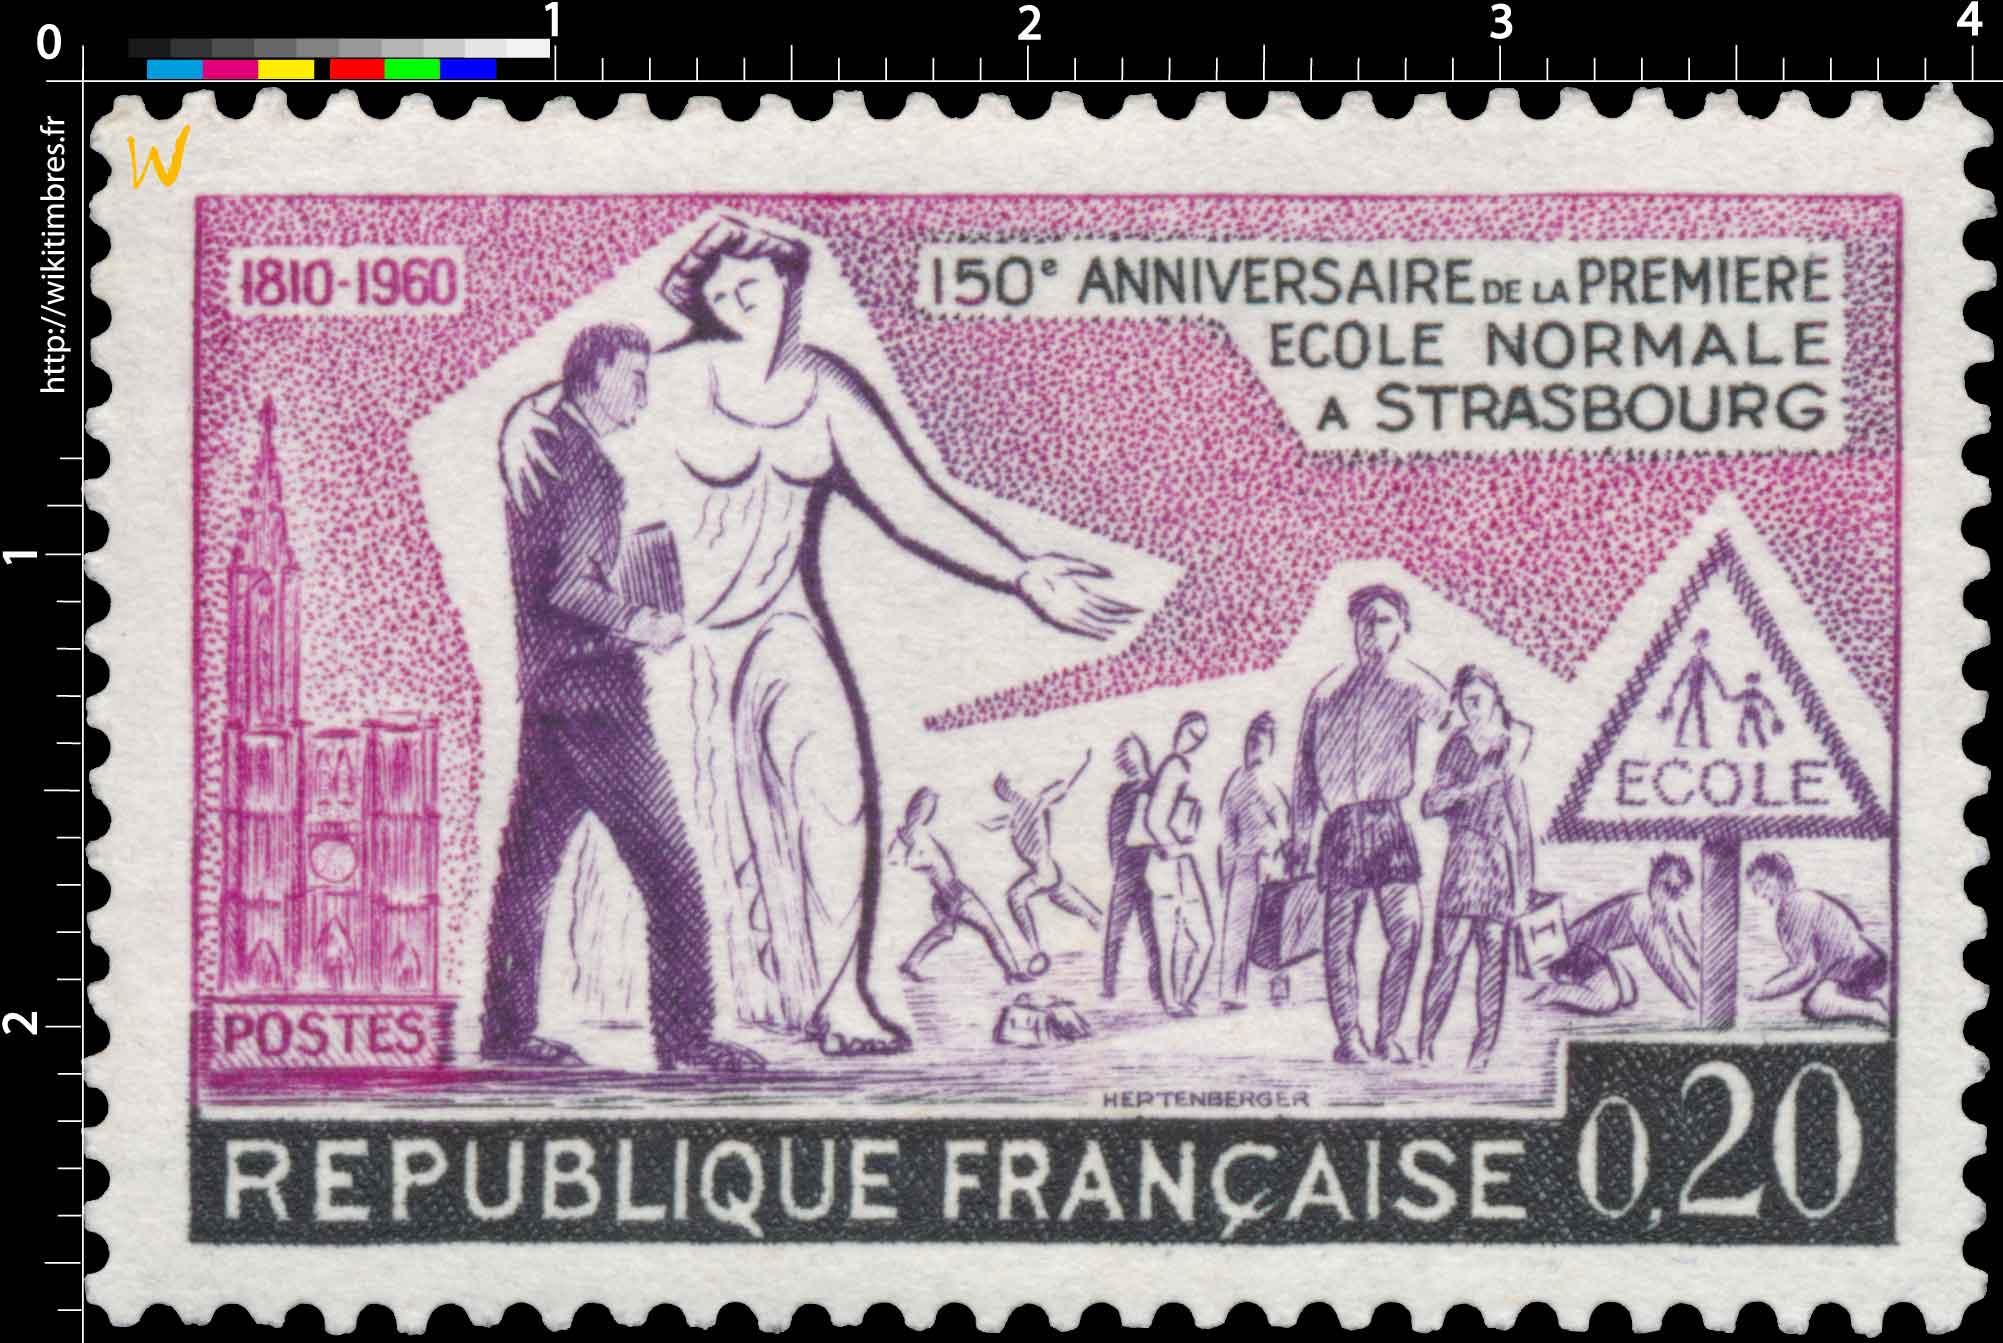 150e ANNIVERSAIRE DE LA PREMIÈRE ÉCOLE NORMALE À STRASBOURG 1810-1960